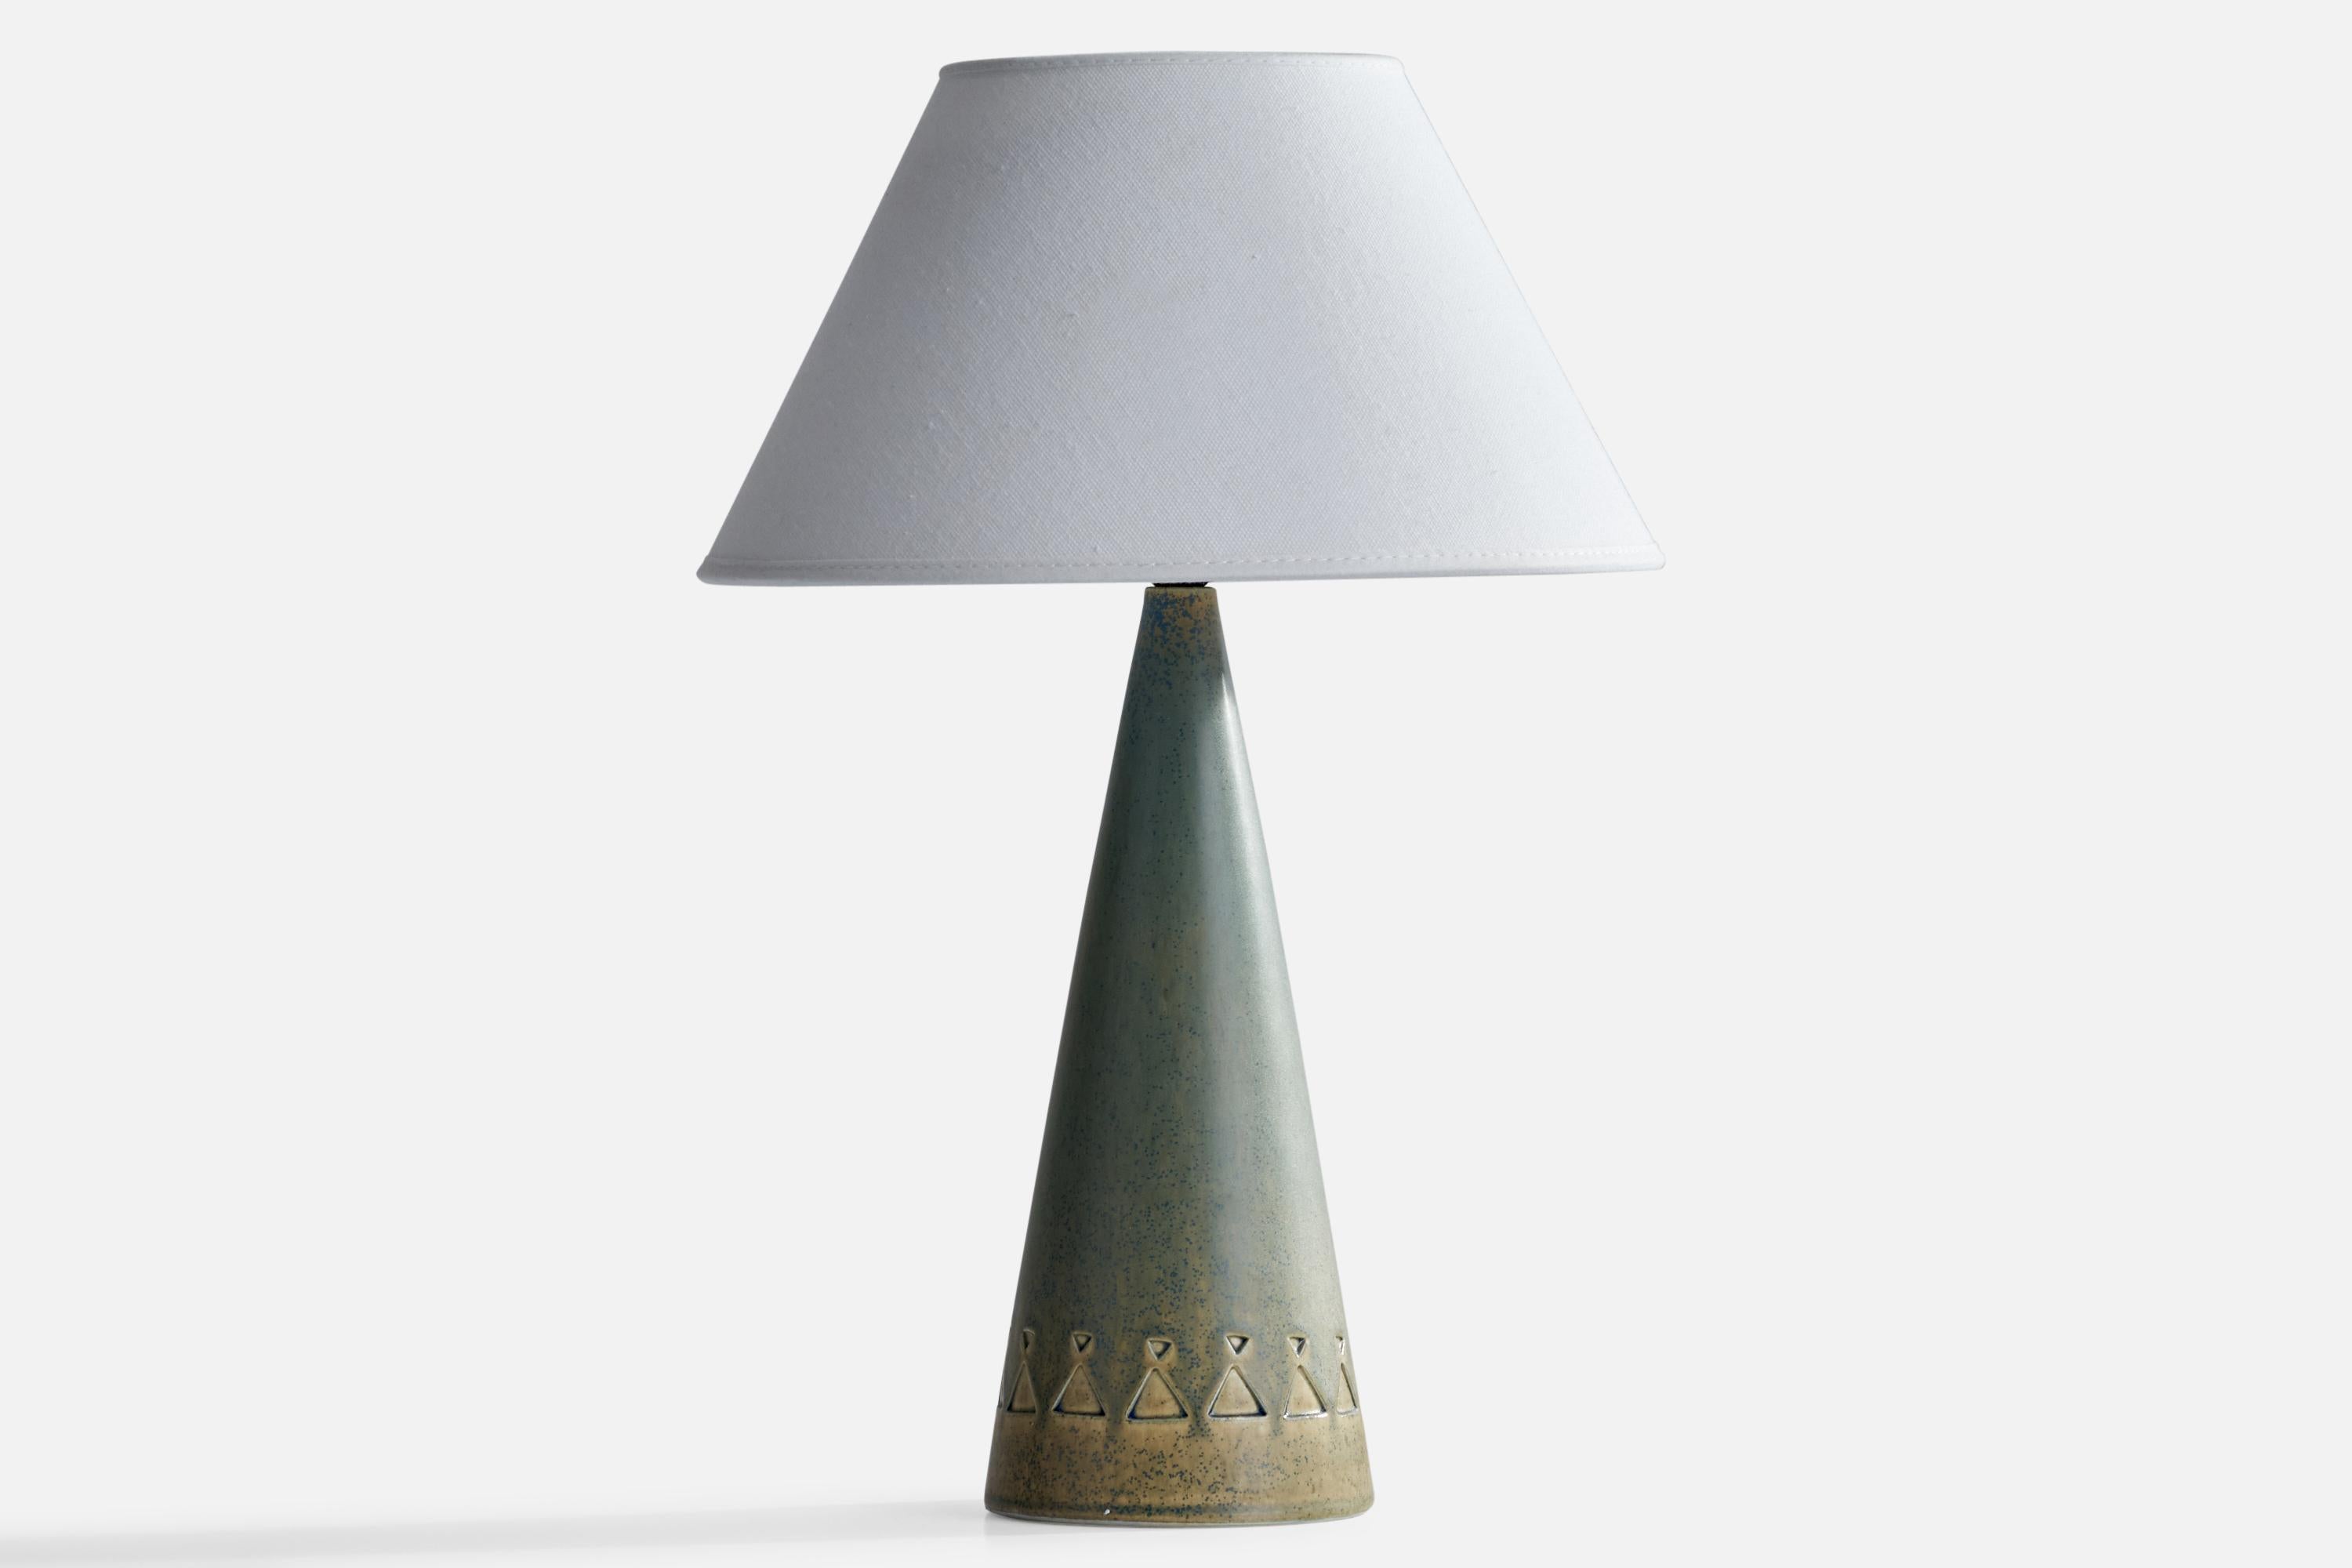 Lampe de table en céramique grise émaillée bleue, conçue et produite par Jie Gantofta, Suède, années 1970.

Dimensions de la lampe (pouces) : 12